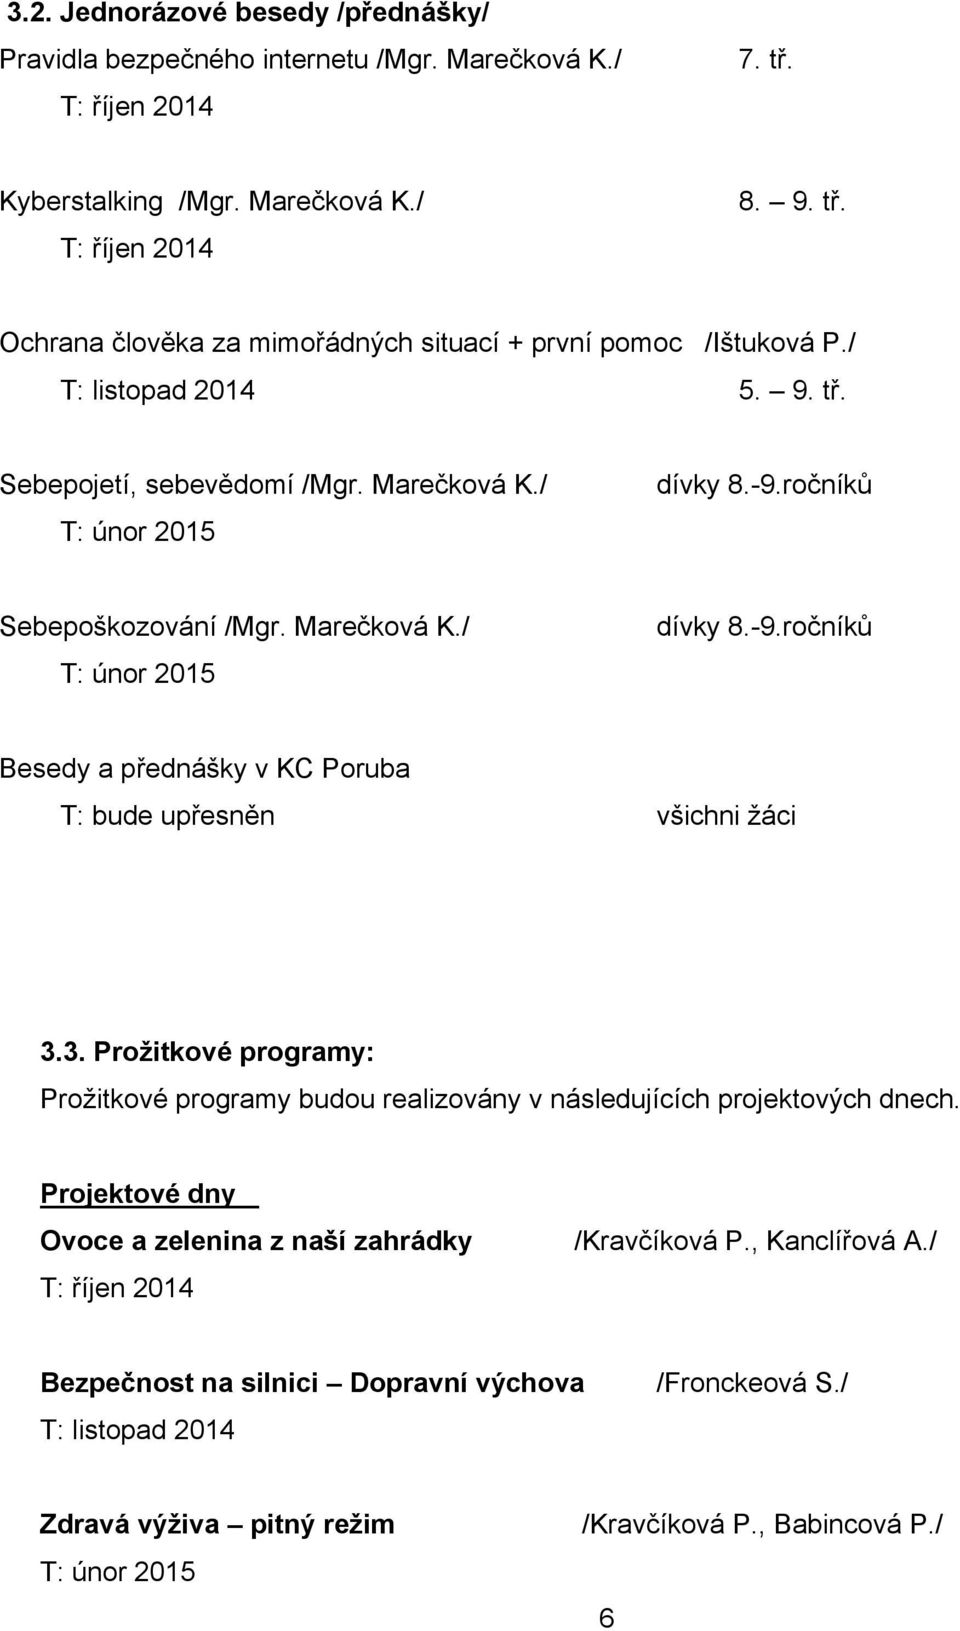 3. Prožitkové programy: Prožitkové programy budou realizovány v následujících projektových dnech. Projektové dny Ovoce a zelenina z naší zahrádky T: říjen 2014 /Kravčíková P., Kanclířová A.